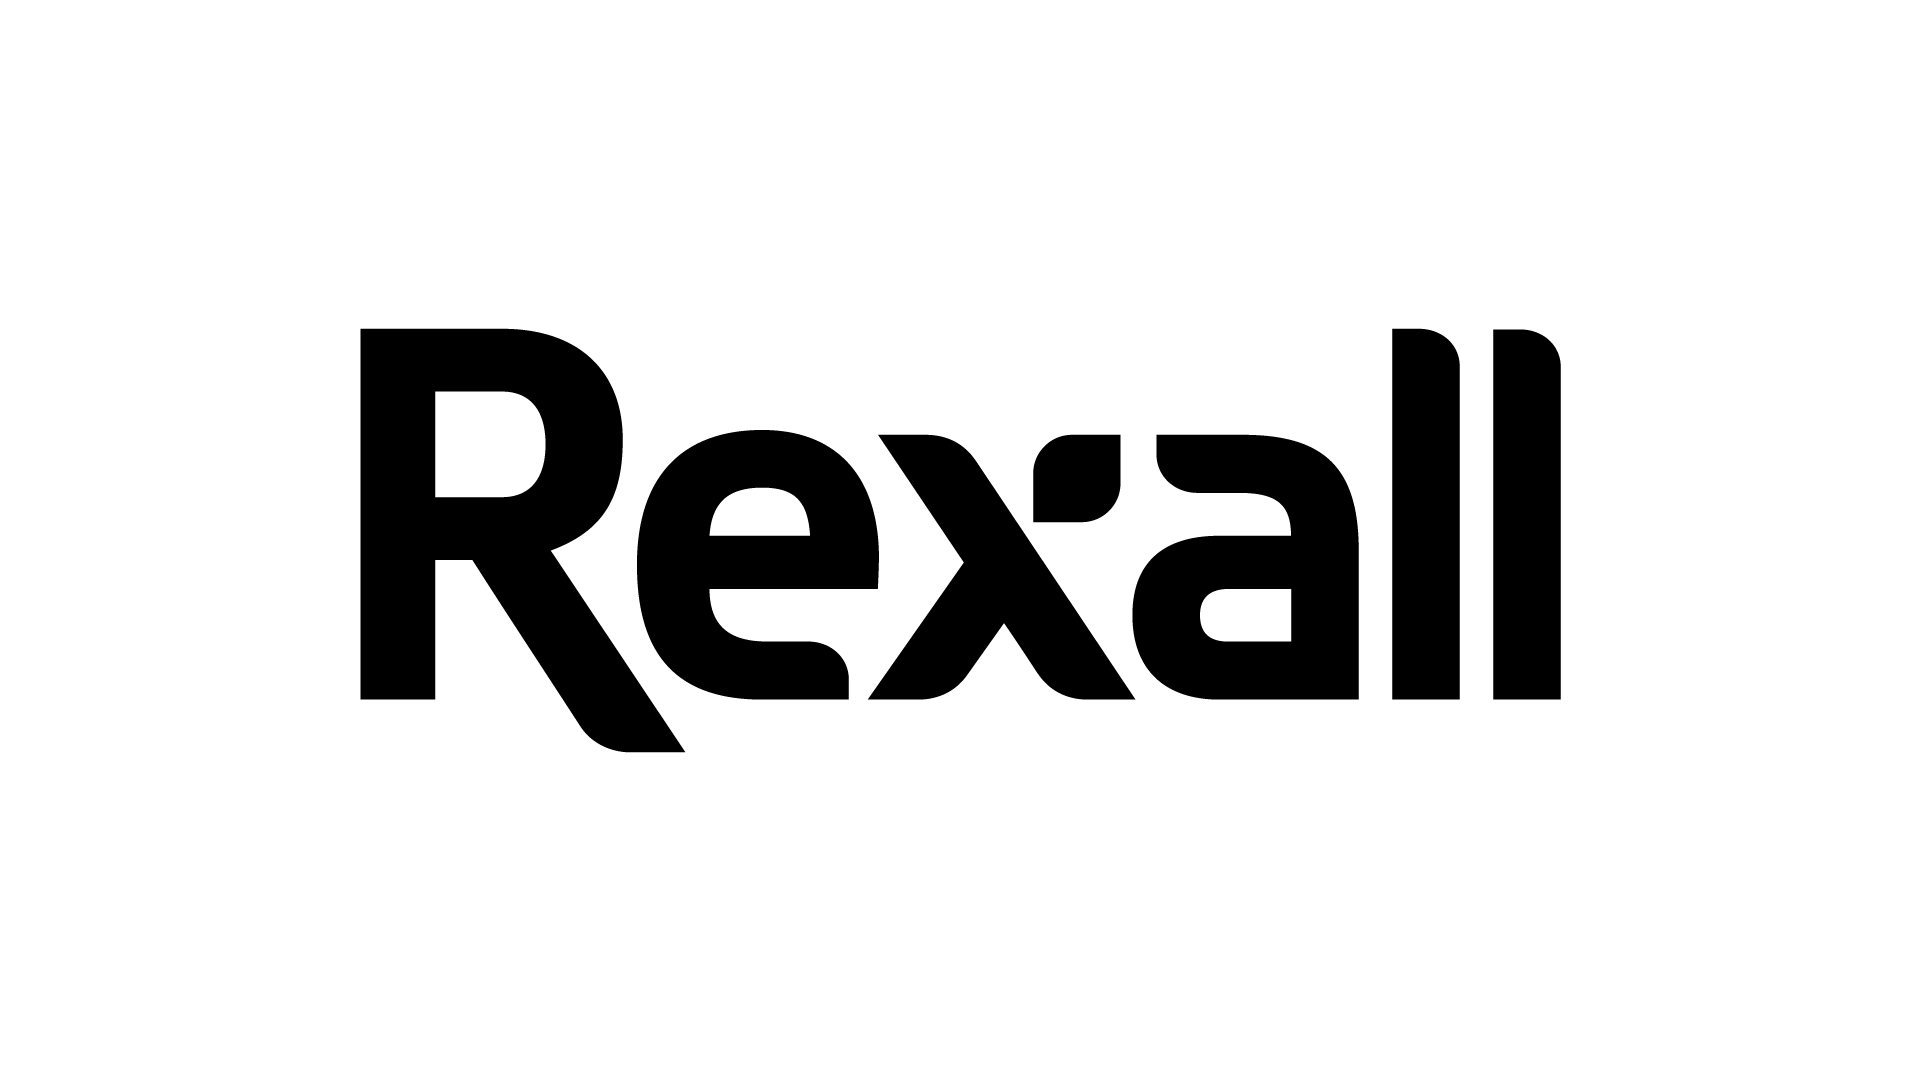 Logo-15.png